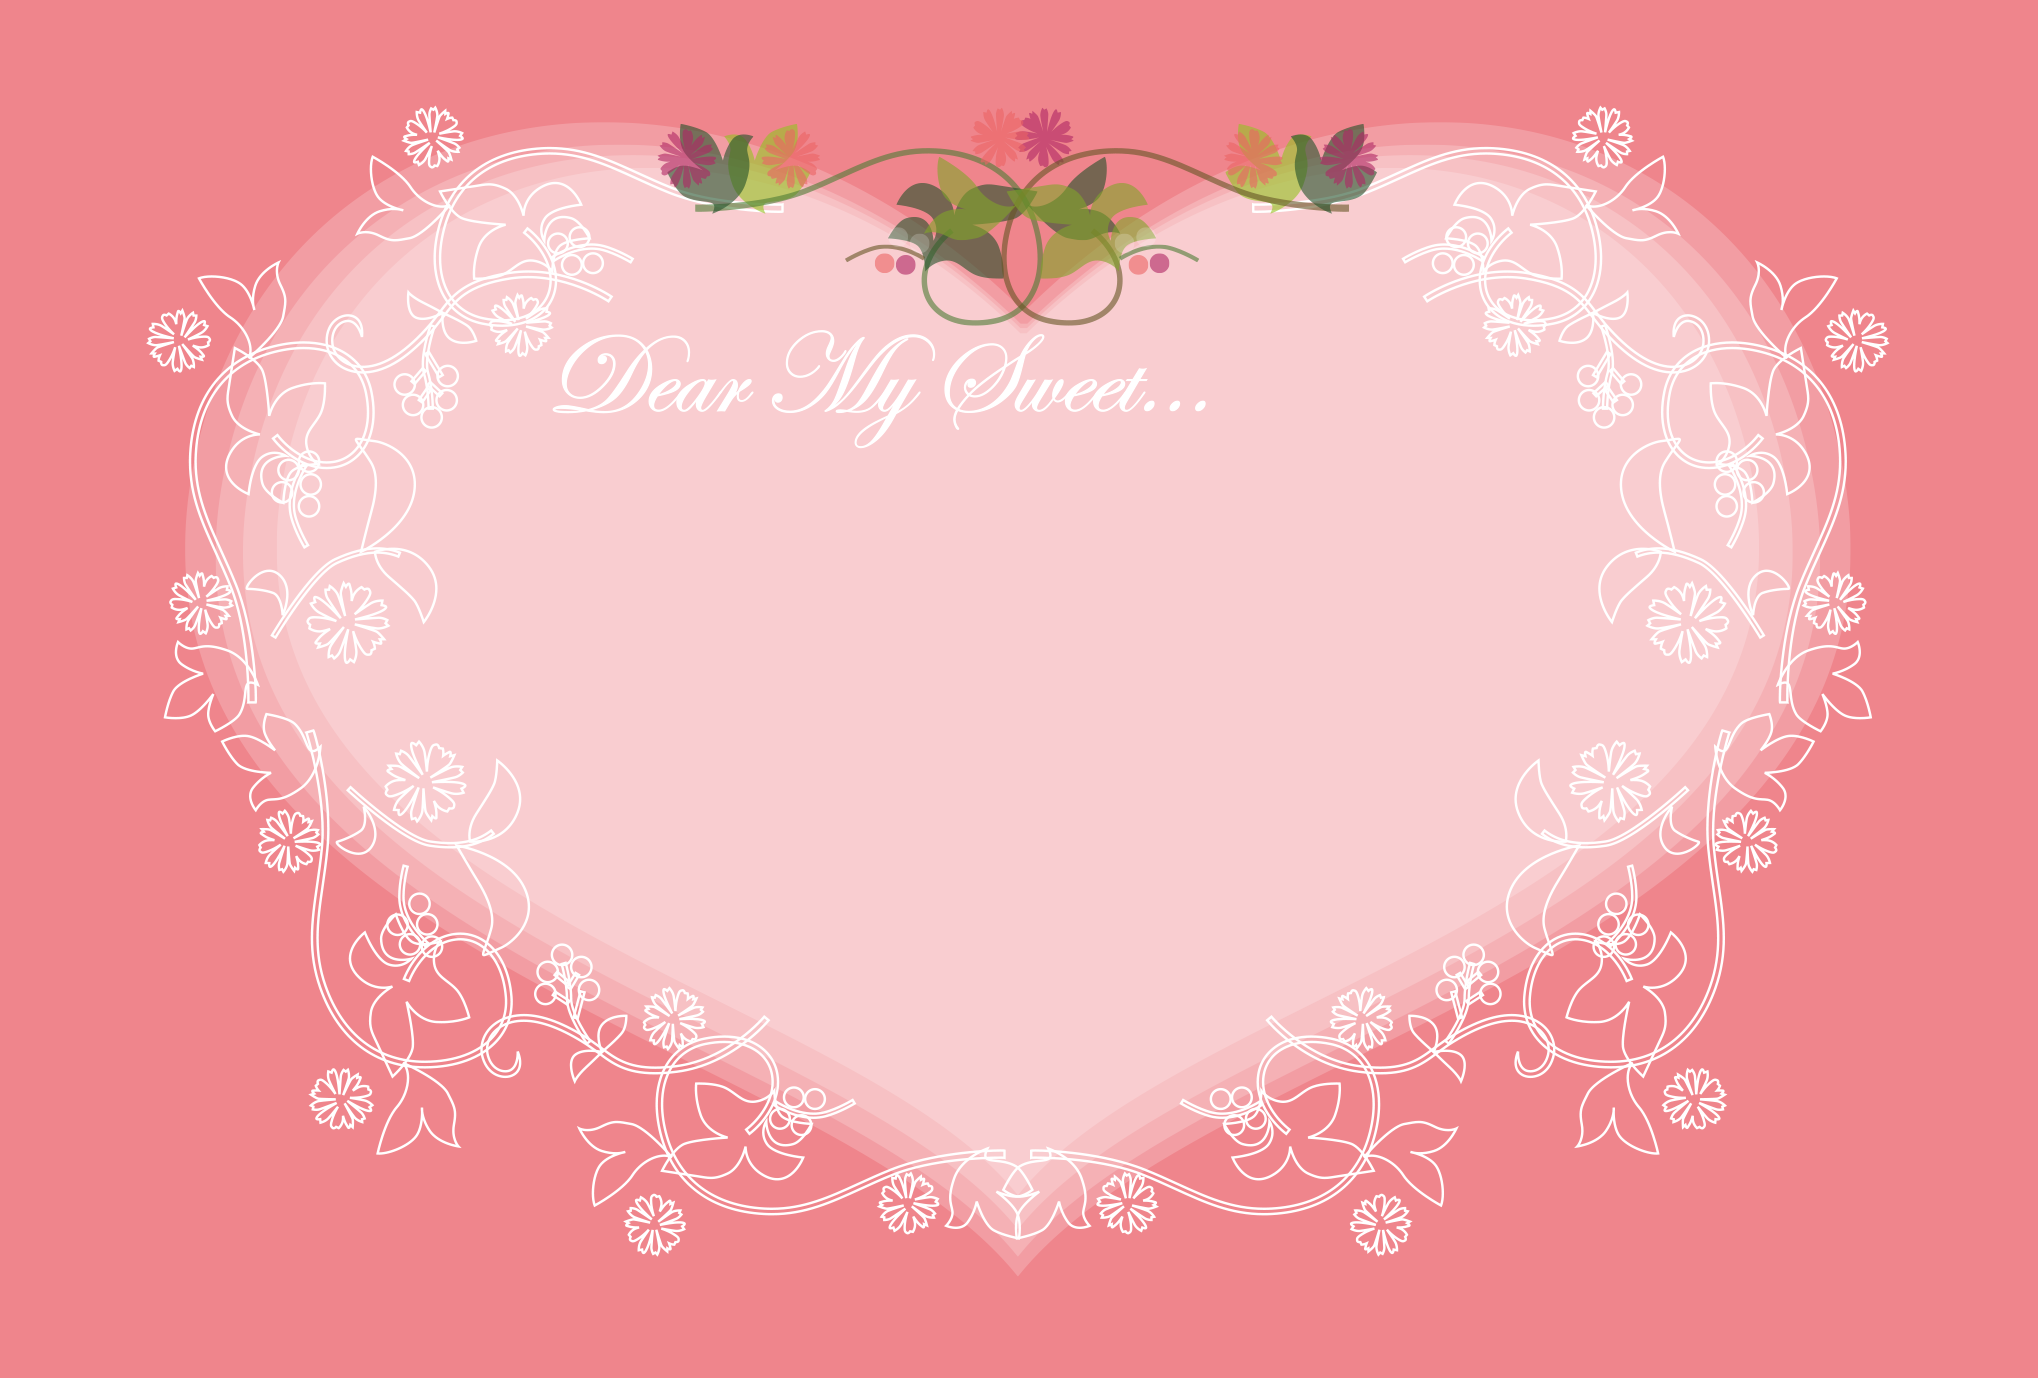 バレンタインカード Valentine ピンク 無料テンプレート印刷 プリントミュージアム